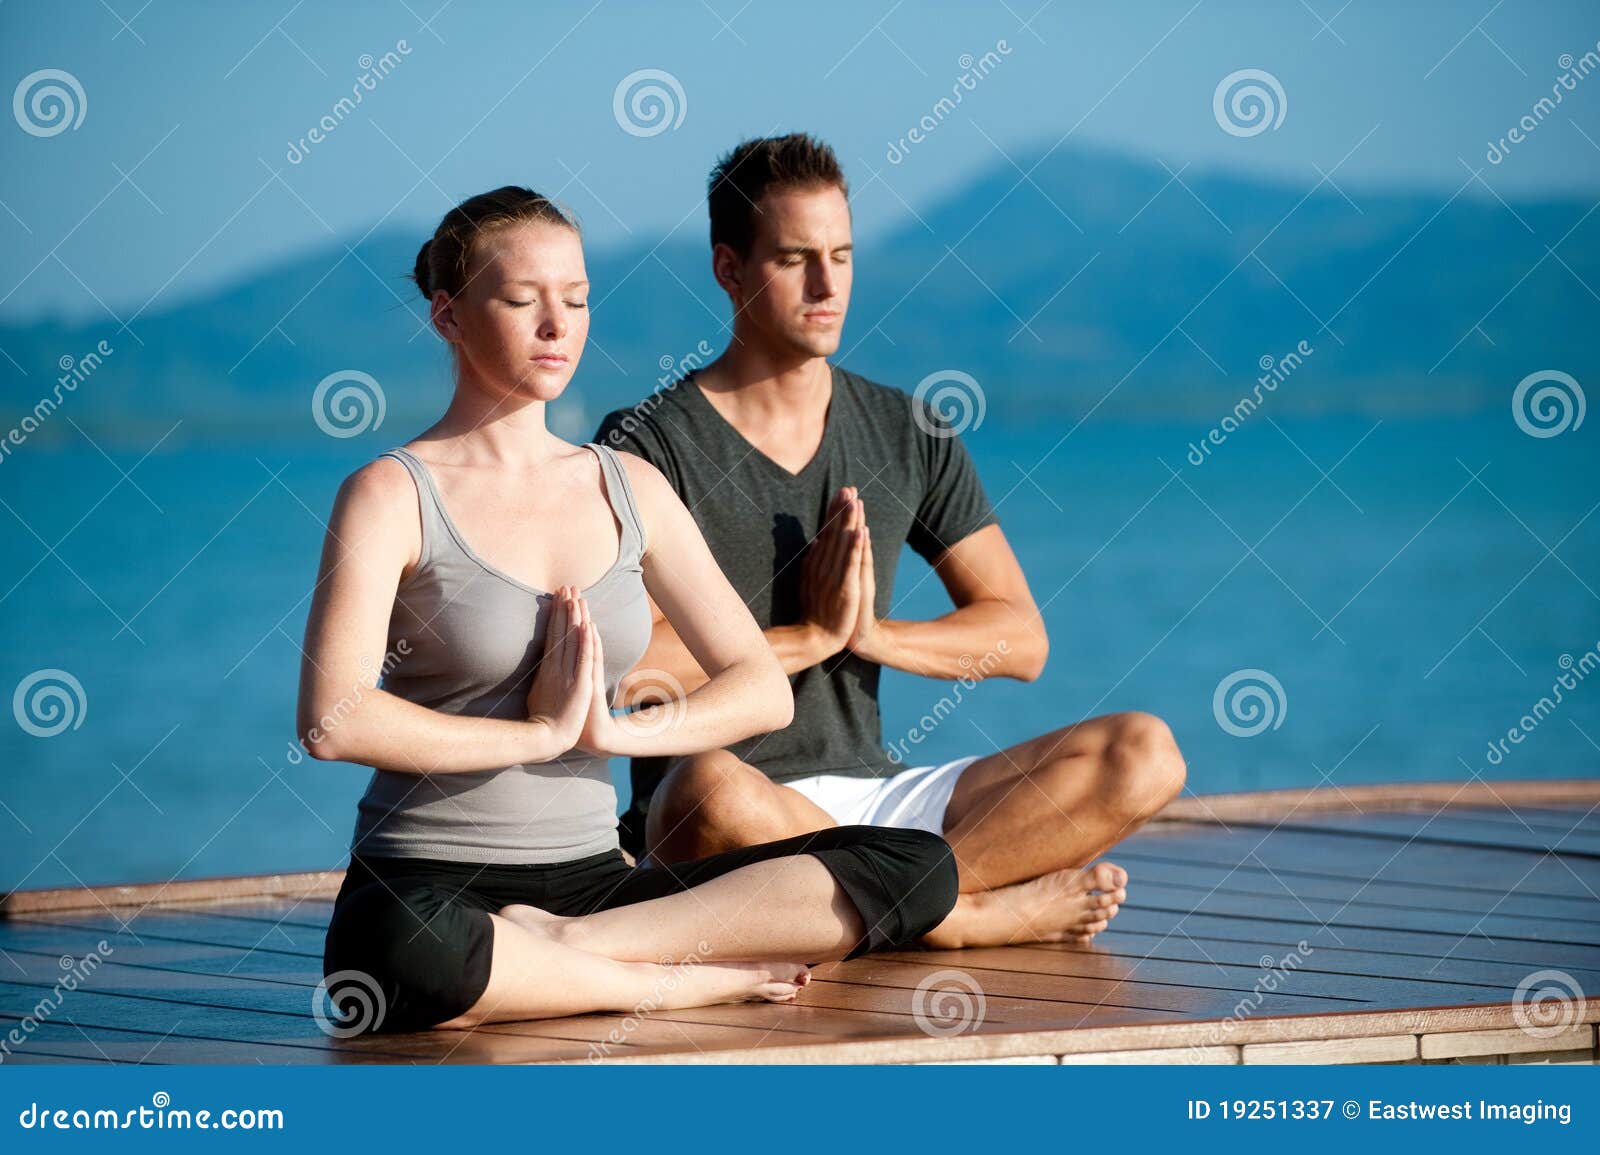 Yogapar av Hav. En attraktiv ung kvinna och man som gör yoga på en brygga med det blåa hav och en annan ö bak dem